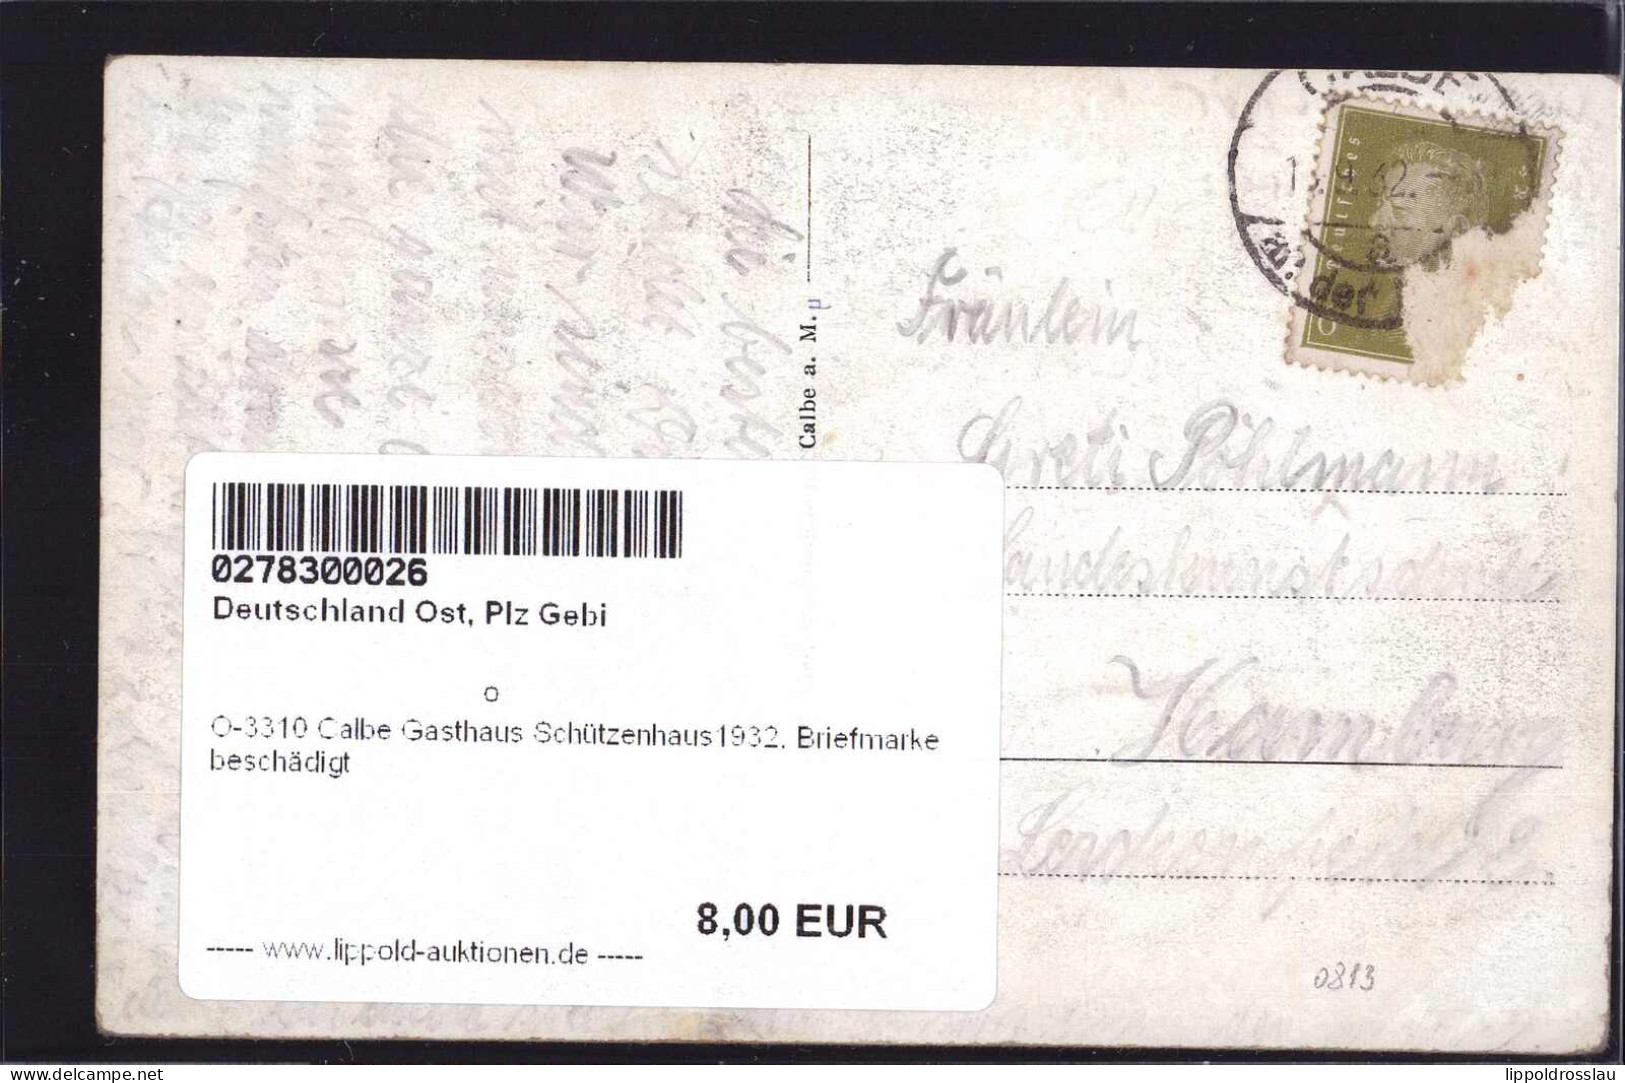 Gest. O-3310 Calbe Gasthaus Schützenhaus1932, Briefmarke Beschädigt - Schönebeck (Elbe)